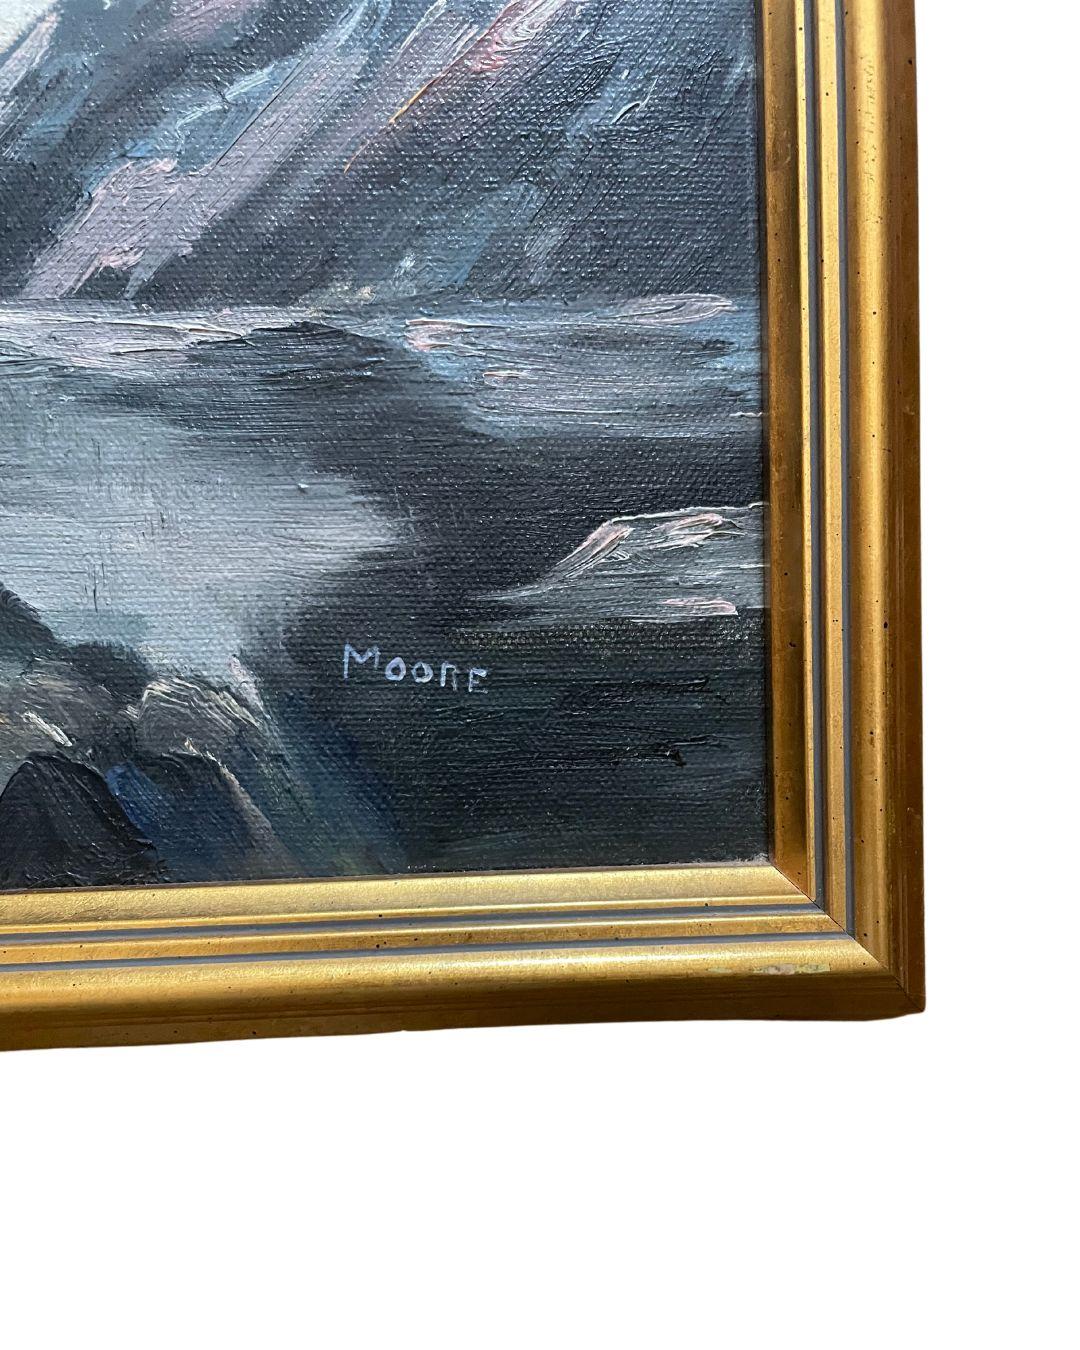 Peinture vintage de paysage marin dans un cadre en bois sculpté et doré. Signé en bas à droite : MOORE

Dimensions : 19,75 